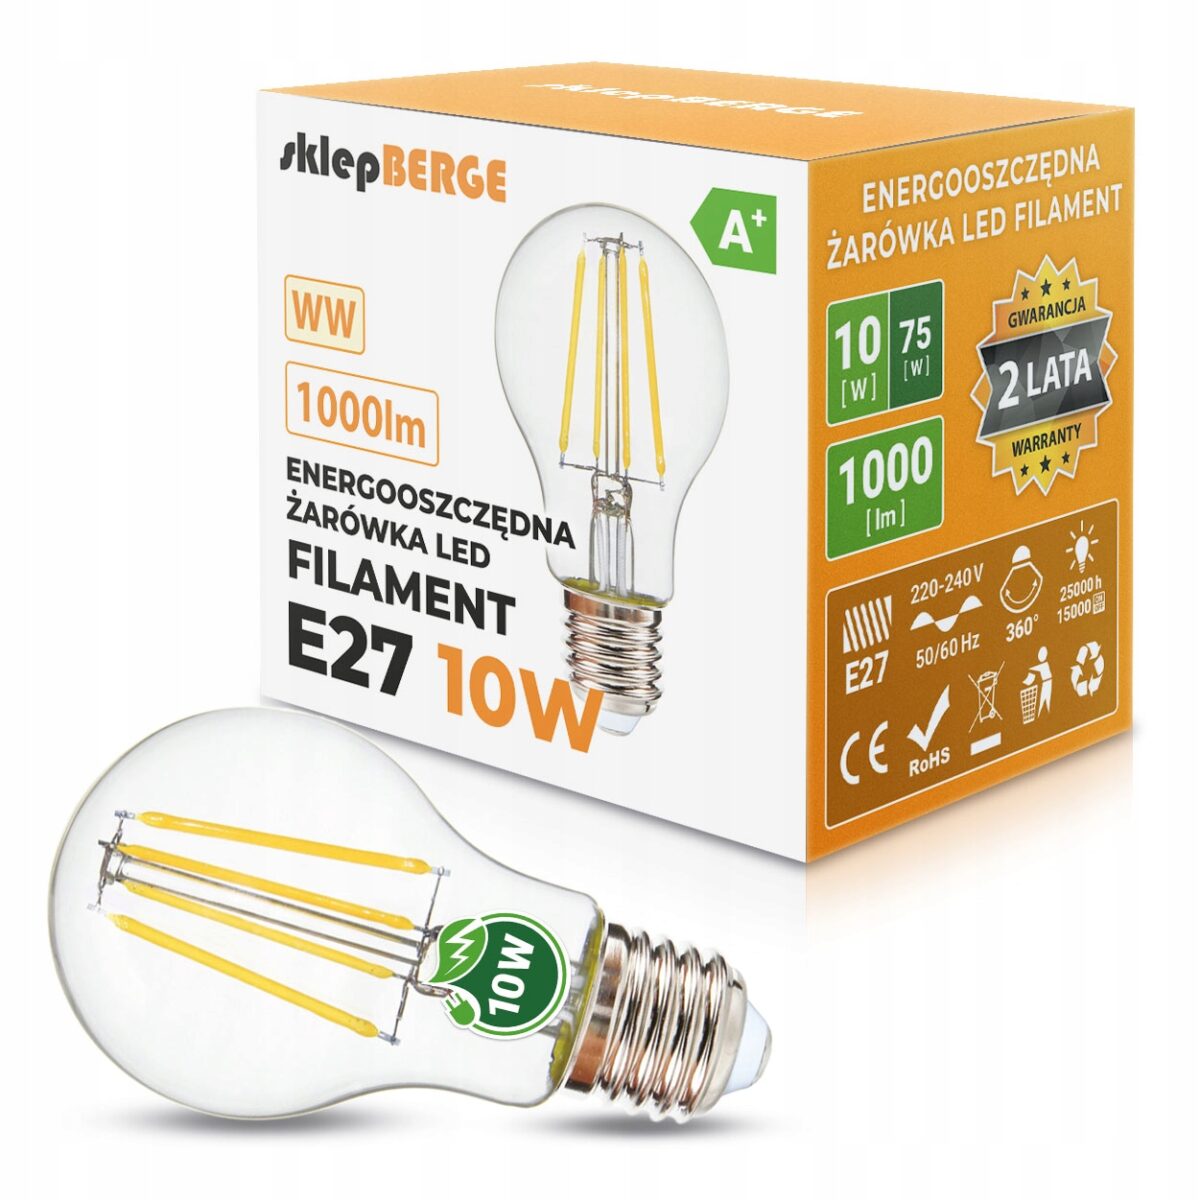 Żarówka ozdobna LED Edison retro filament E27 10W 1000lm 3000K barwa ciepła 24042 ecoPLANET